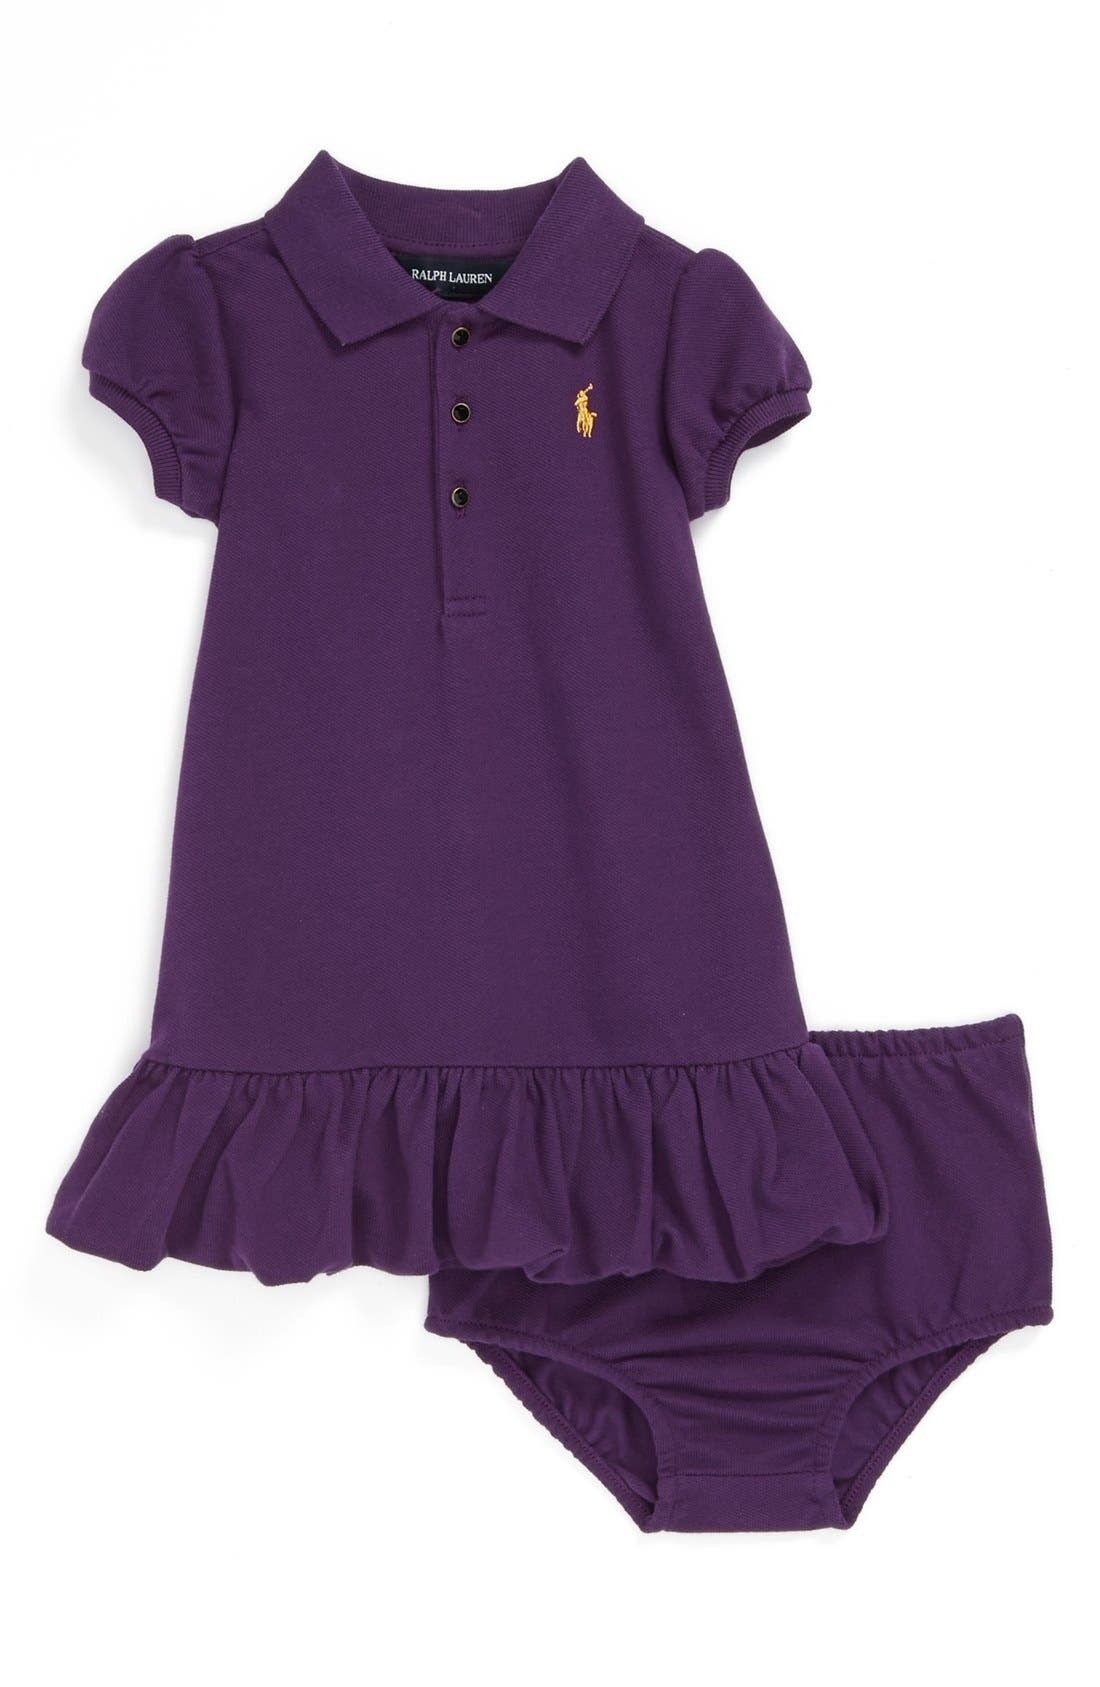 polo baby girl clothes